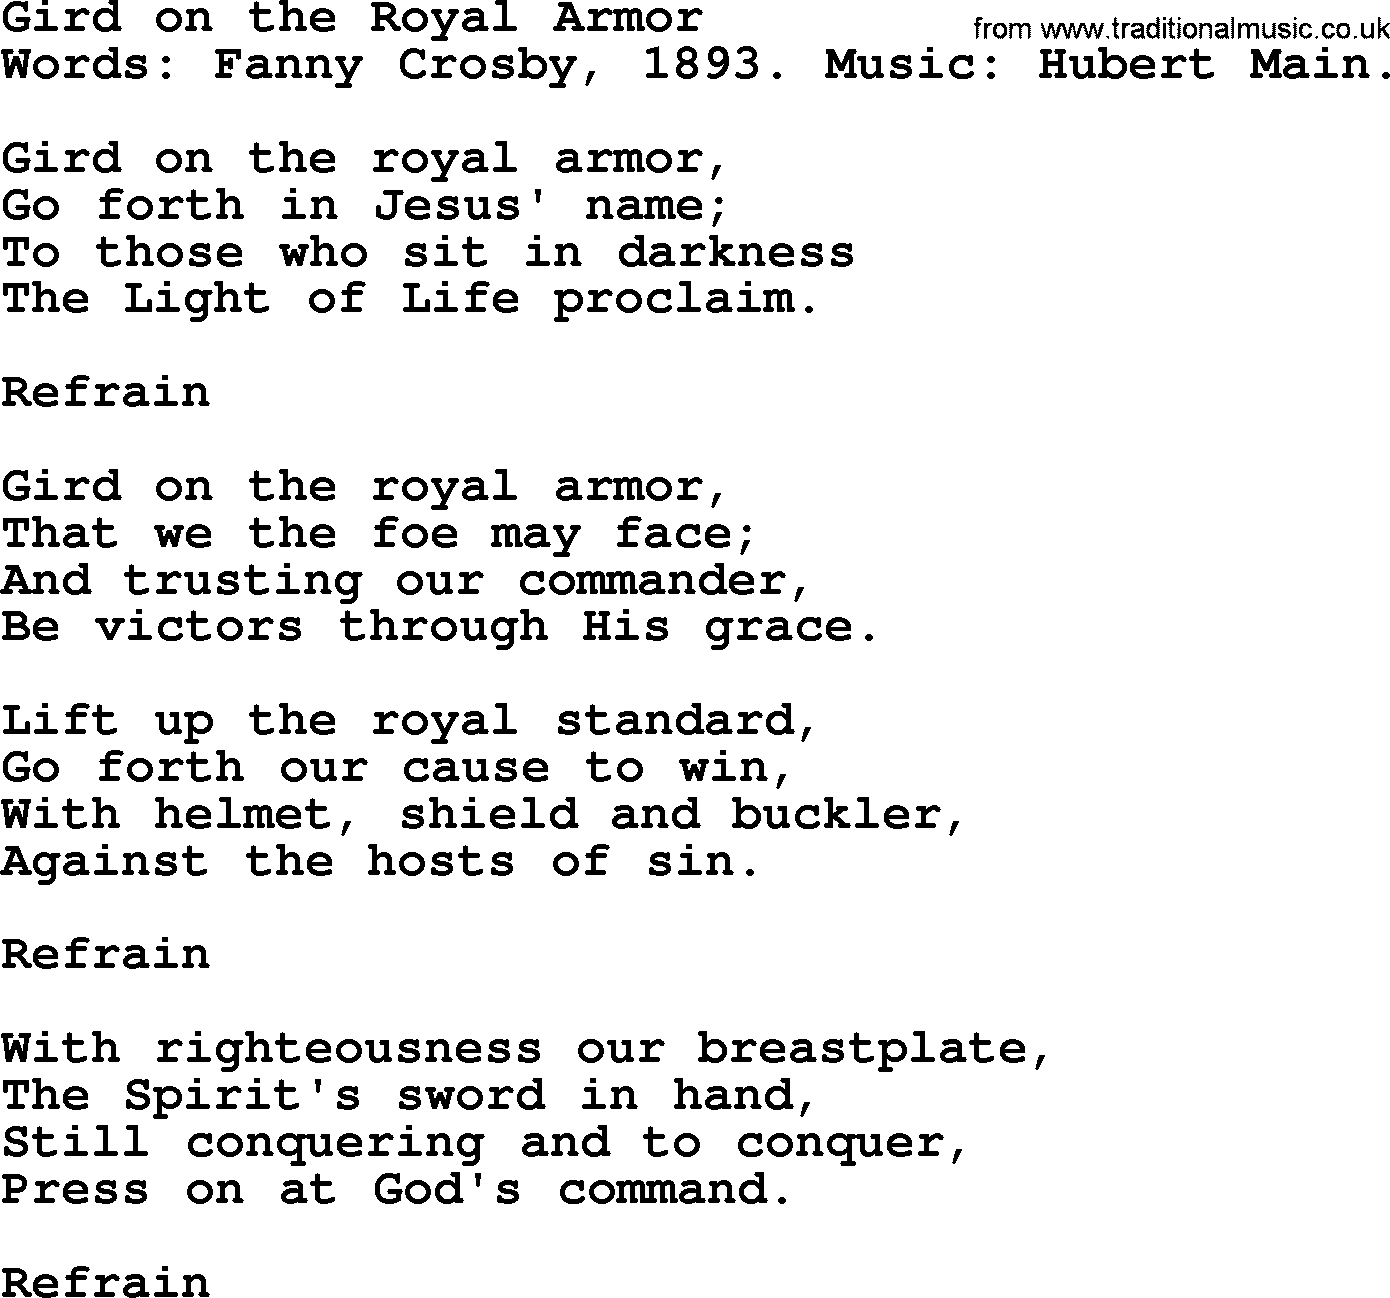 Fanny Crosby song: Gird On The Royal Armor, lyrics